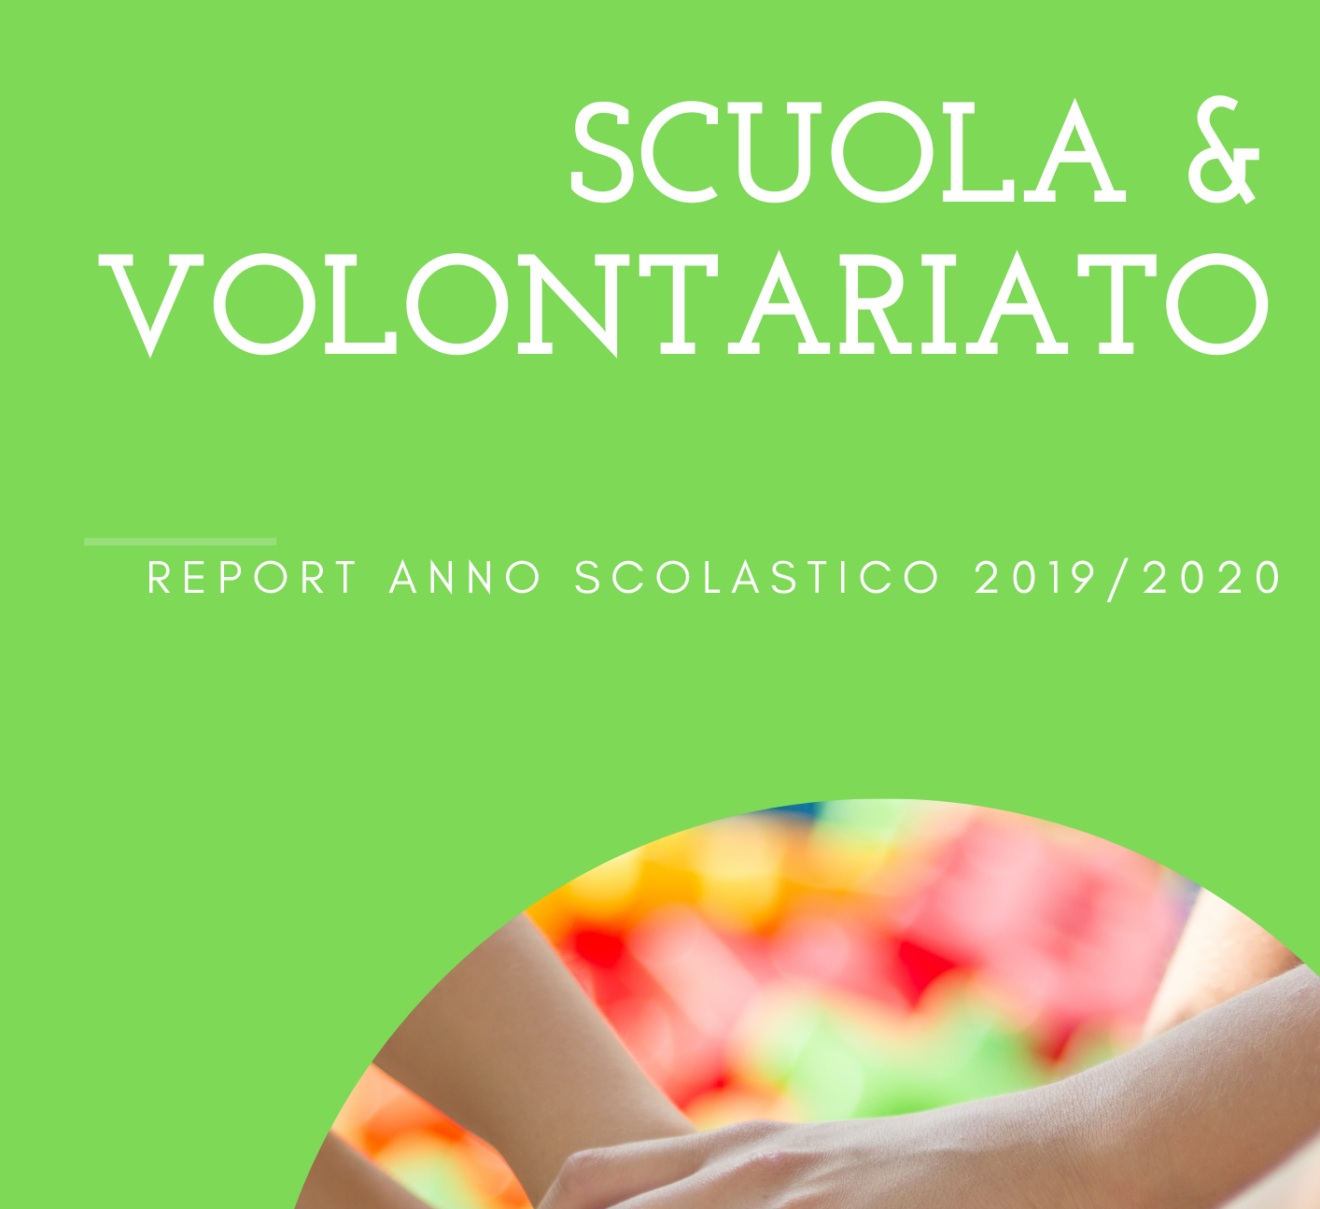 Report Scuola & Volontariato 2019/2020